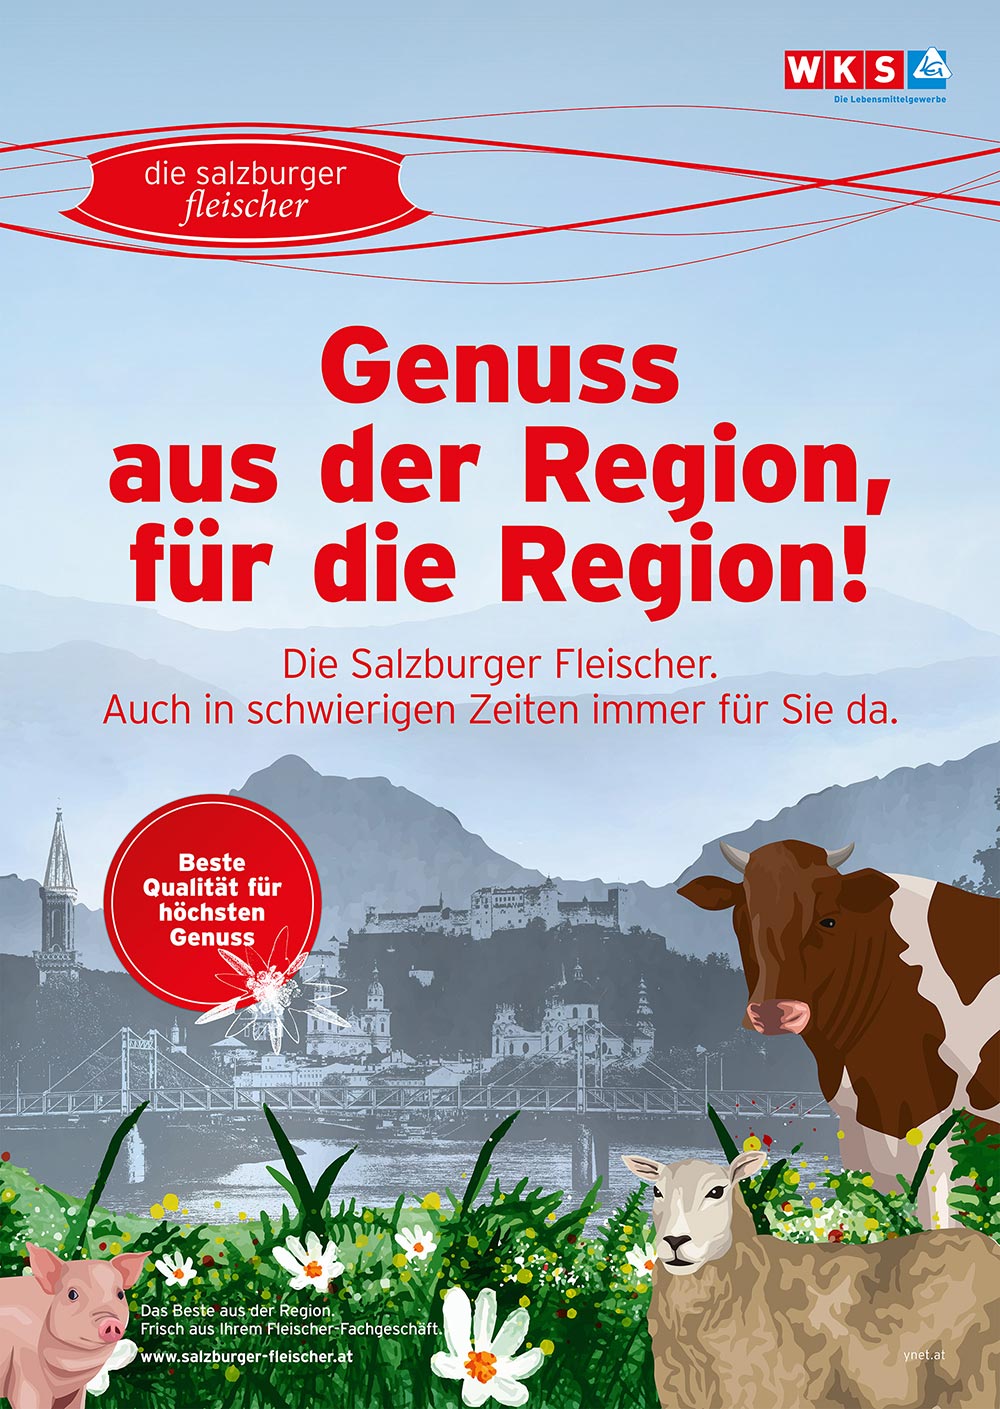 Salzburger Fleischer Genuss aus der Region 1000px